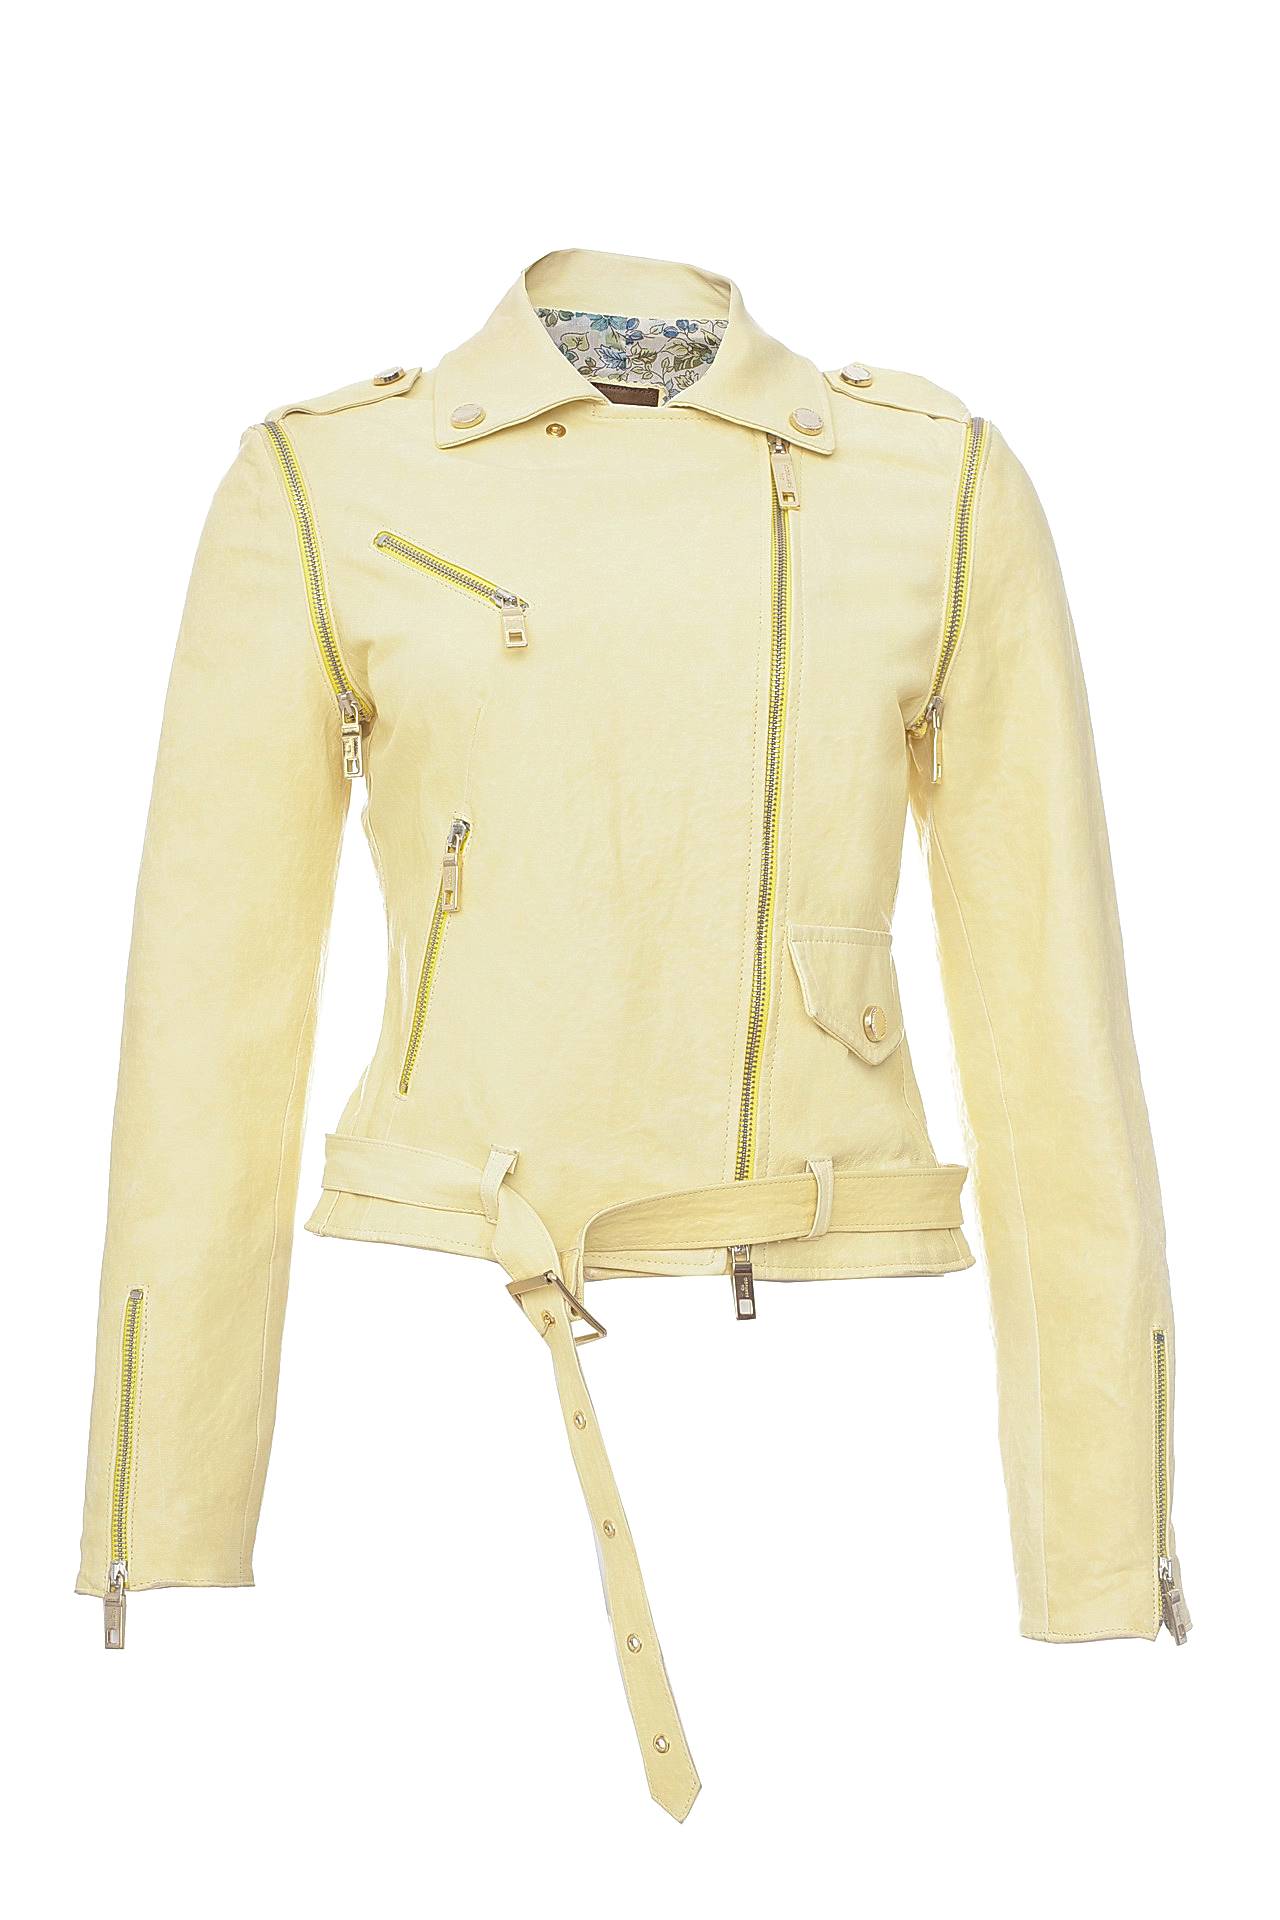 Одежда женская Куртка GIL SANTUCCI (121СF47/16.2). Купить за 21450 руб.